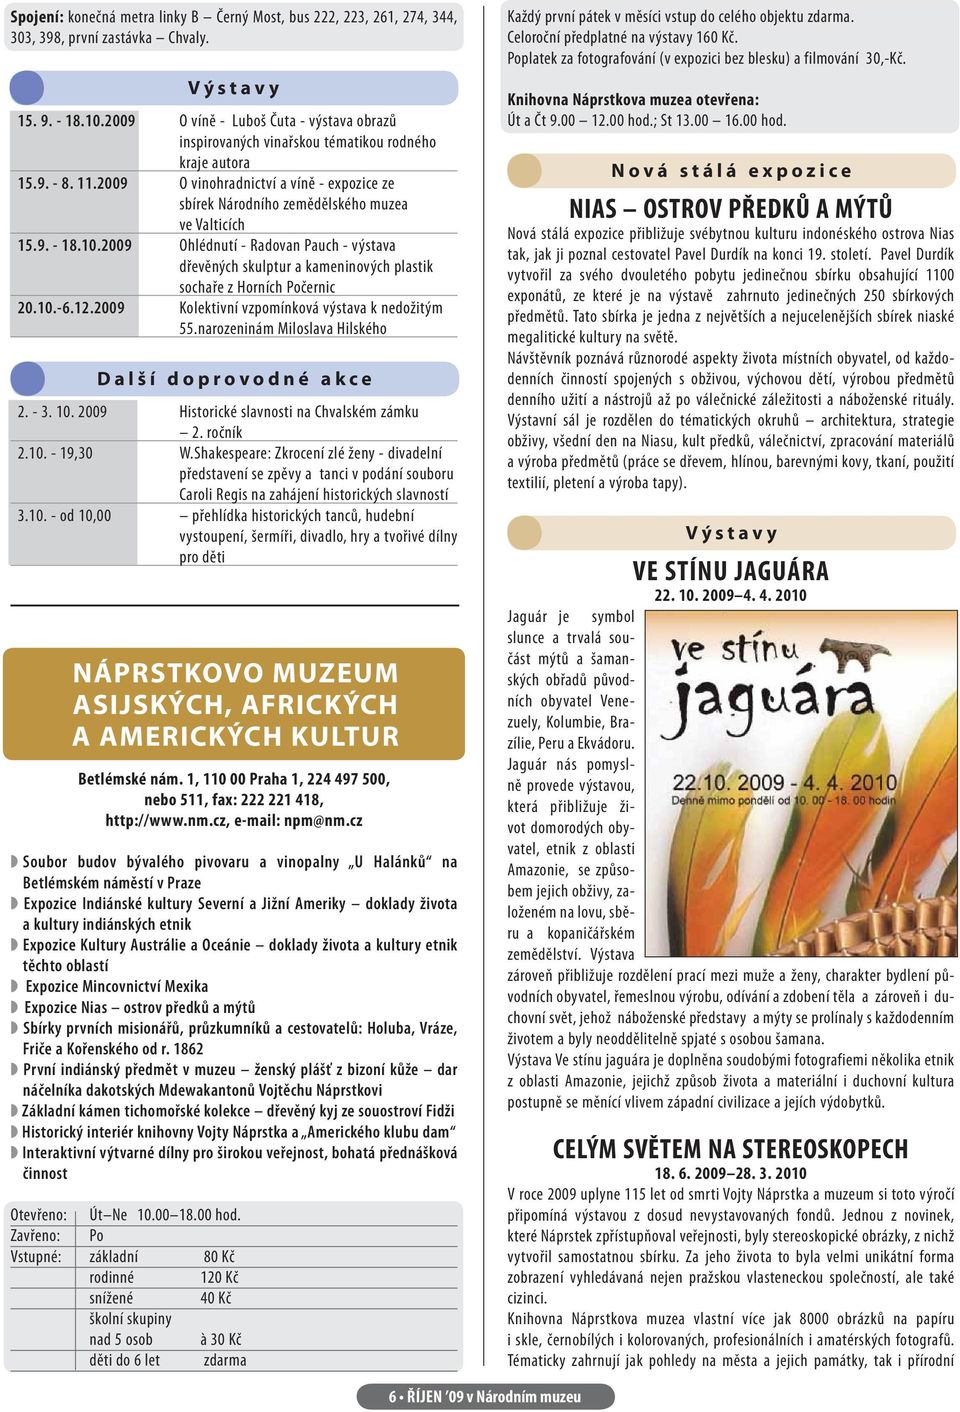 2009 O vinohradnictví a víně - expozice ze sbírek Národního zemědělského muzea ve Valticích 15.9. - 18.10.